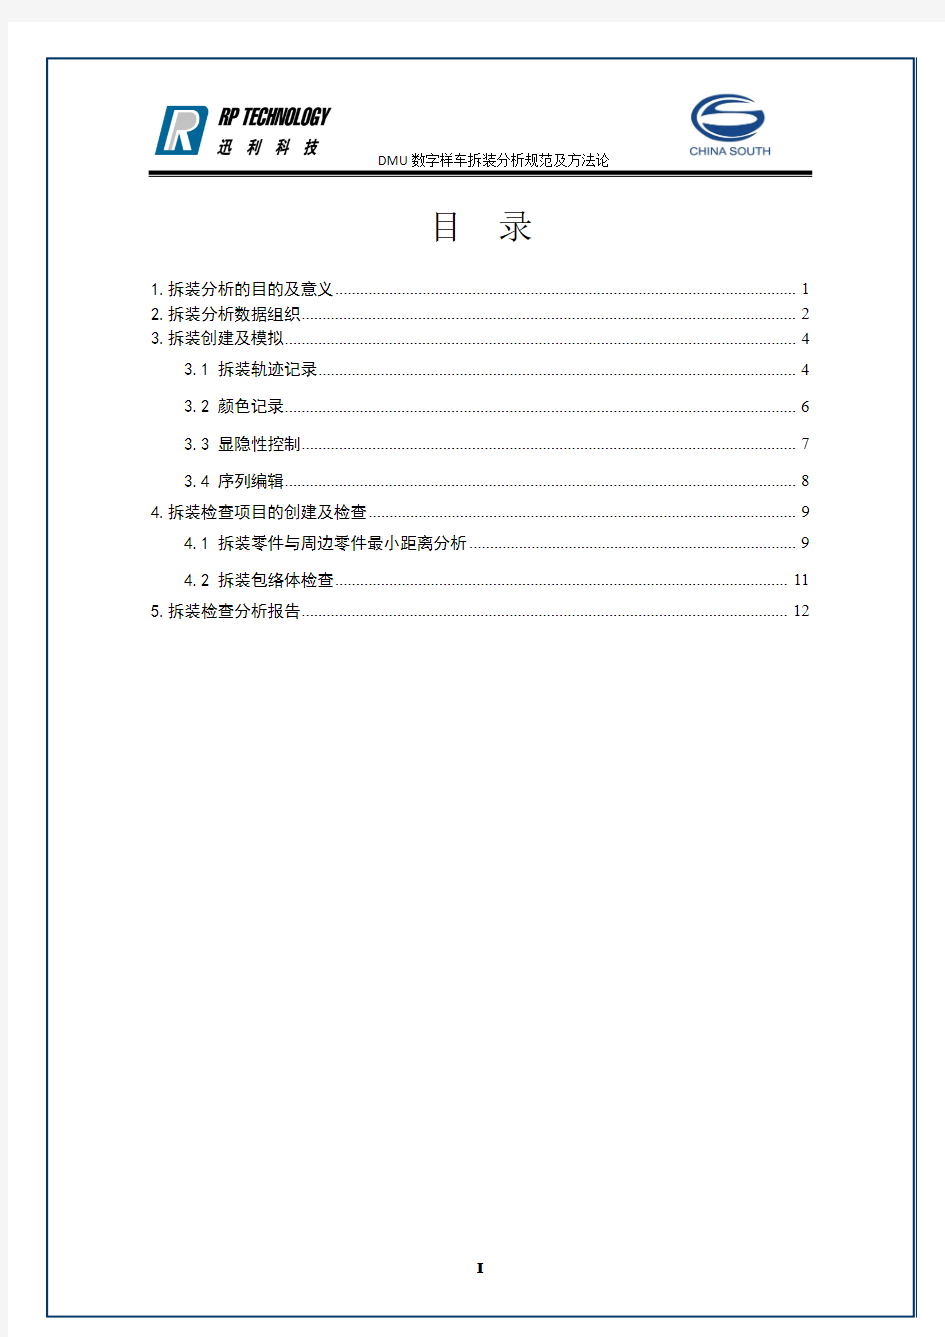 08-CATIA (汽车摩托车企业-设计人员内部培训资料)重庆南方摩托车DMU数字样车拆装分析规范及方法论-V02OK